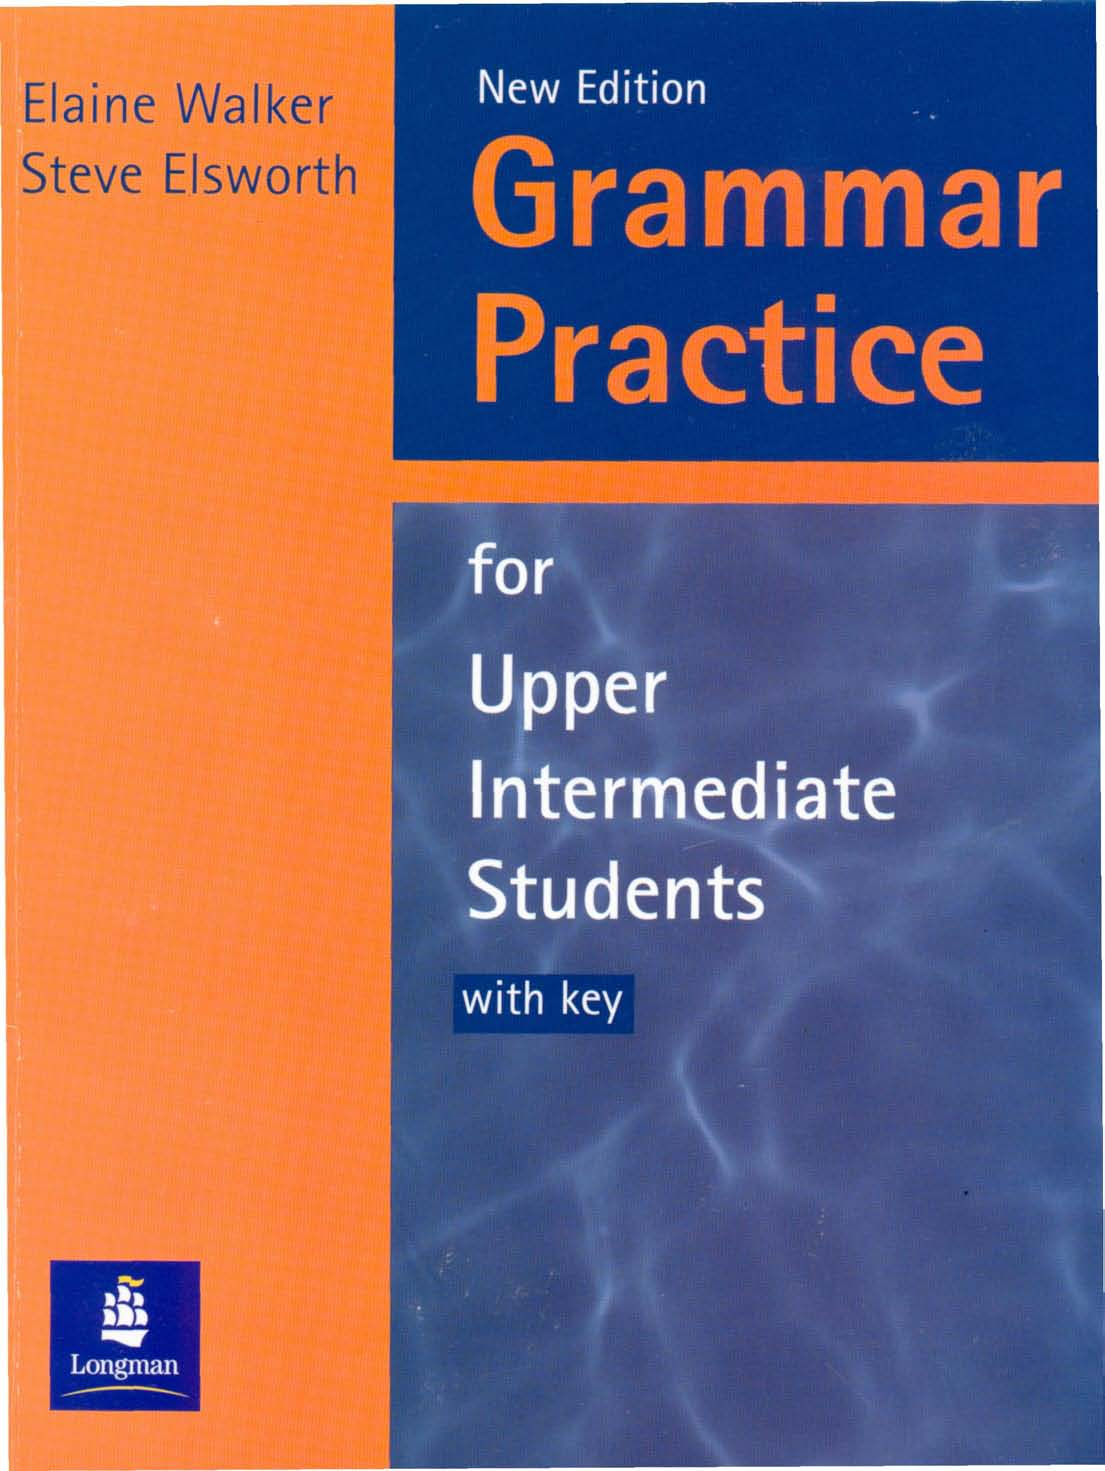 Elaine Walker (Longman) - Grammar Practice for Upper Intermediate Students 2000